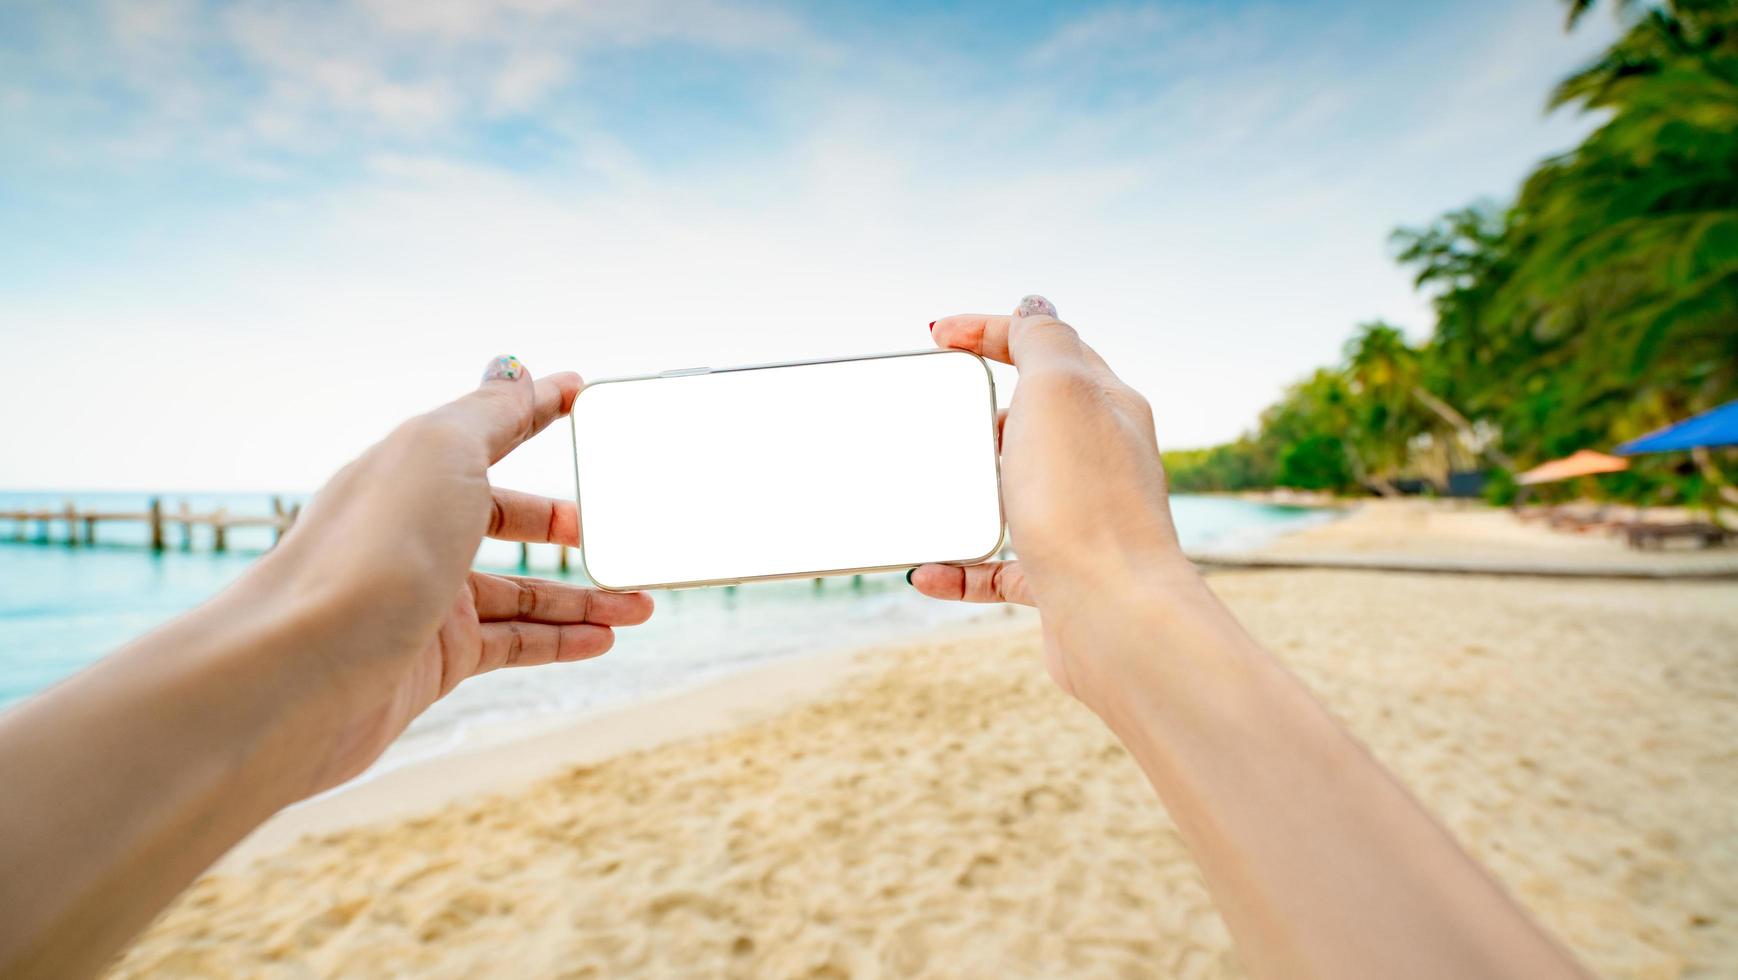 manos de mujer sosteniendo un teléfono inteligente con una pantalla vacía en la playa de arena de una isla tropical. mujer tomando una foto de la playa paraíso en vacaciones de verano. mujer asiática adulta disfrutando y relajándose en la playa.